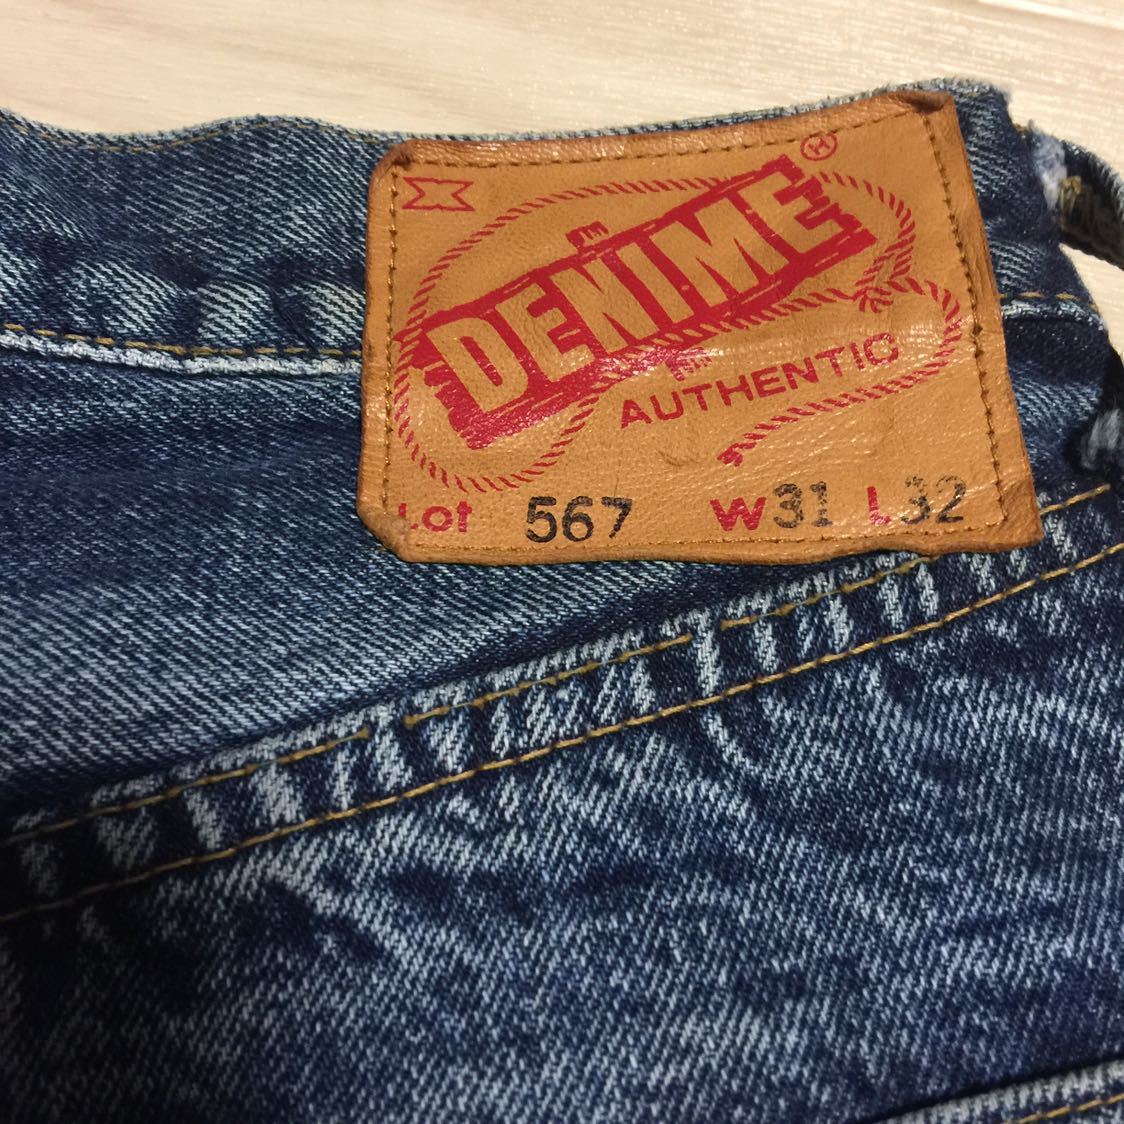  сделано в Японии старый Denime Denim olizonti брюки джинсы 31 M красный уголок Vintage сетка (желудок) lizoruto66 xx